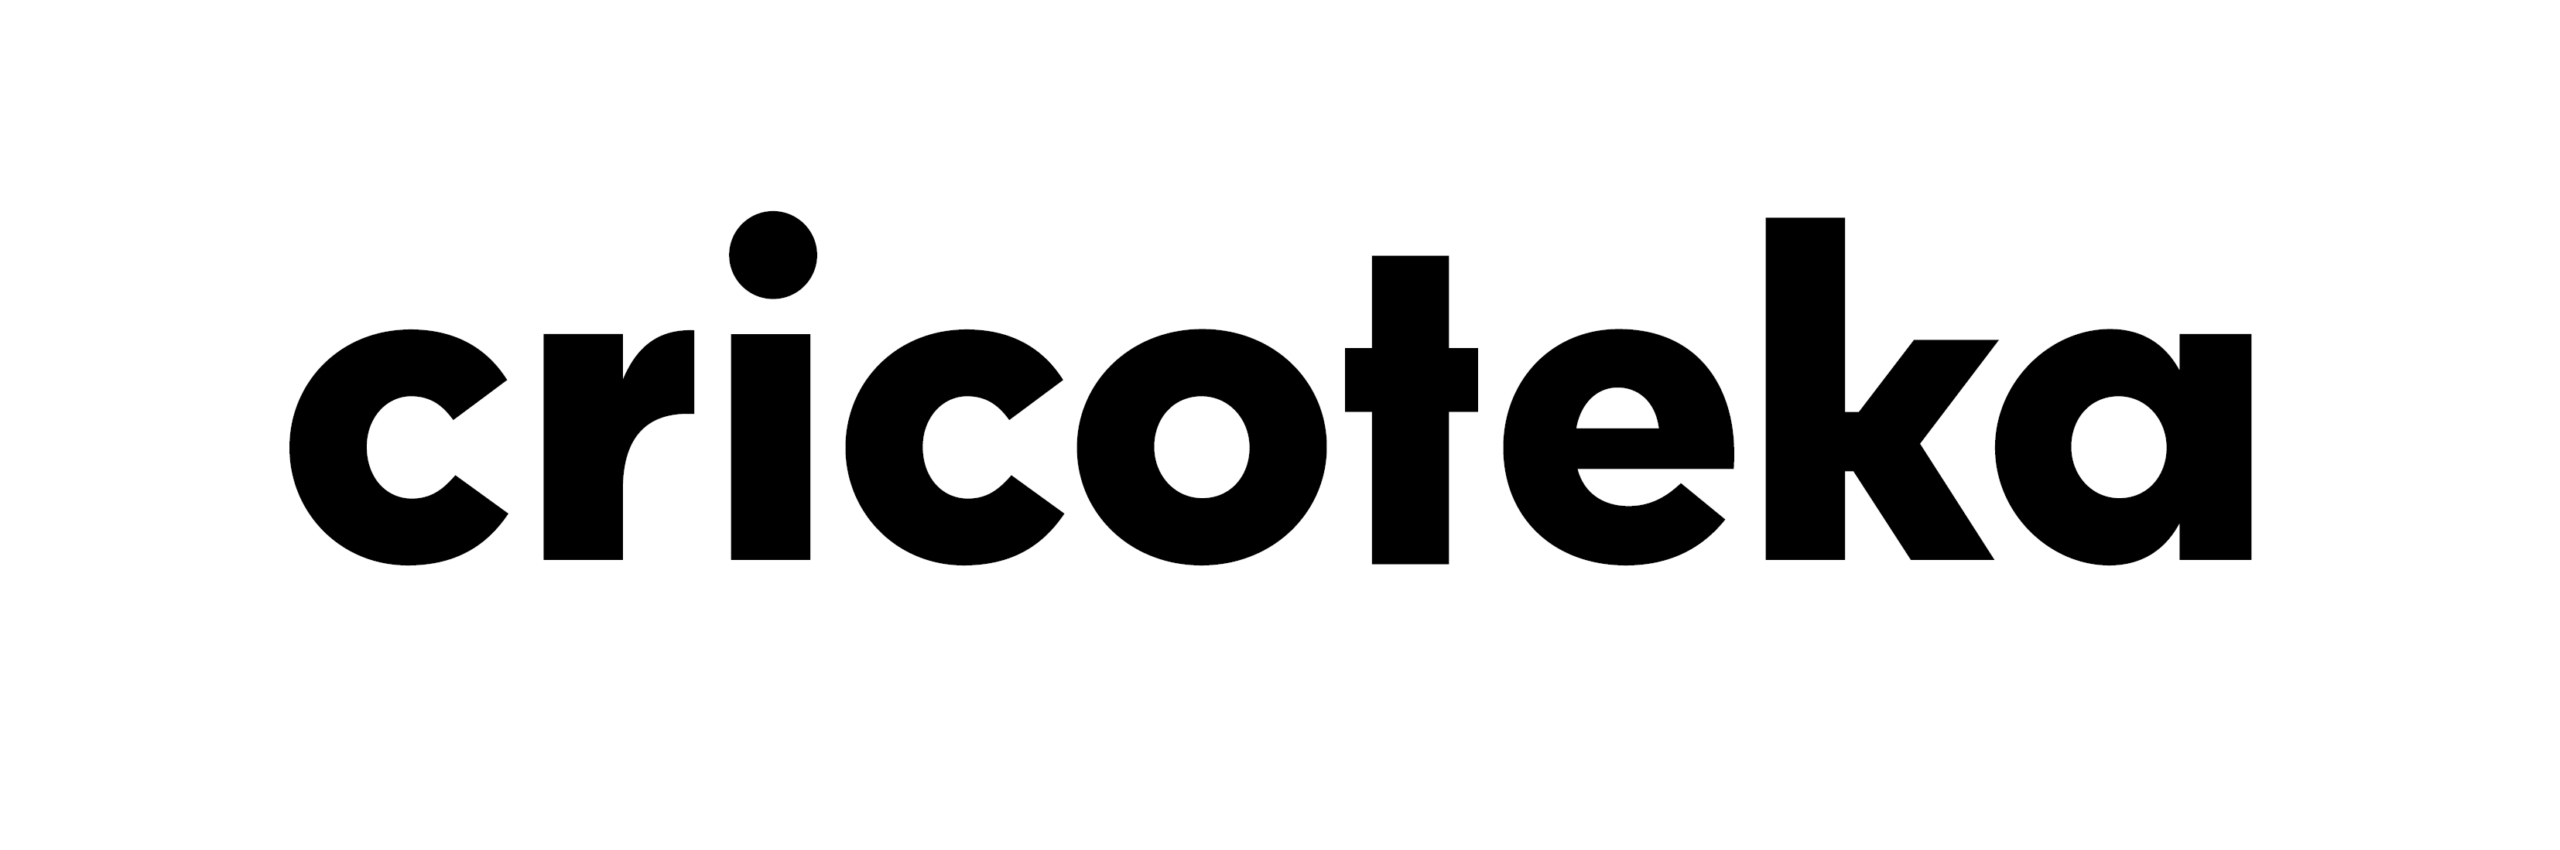 Logotyp: czarny napis Cricoteka na białym tle